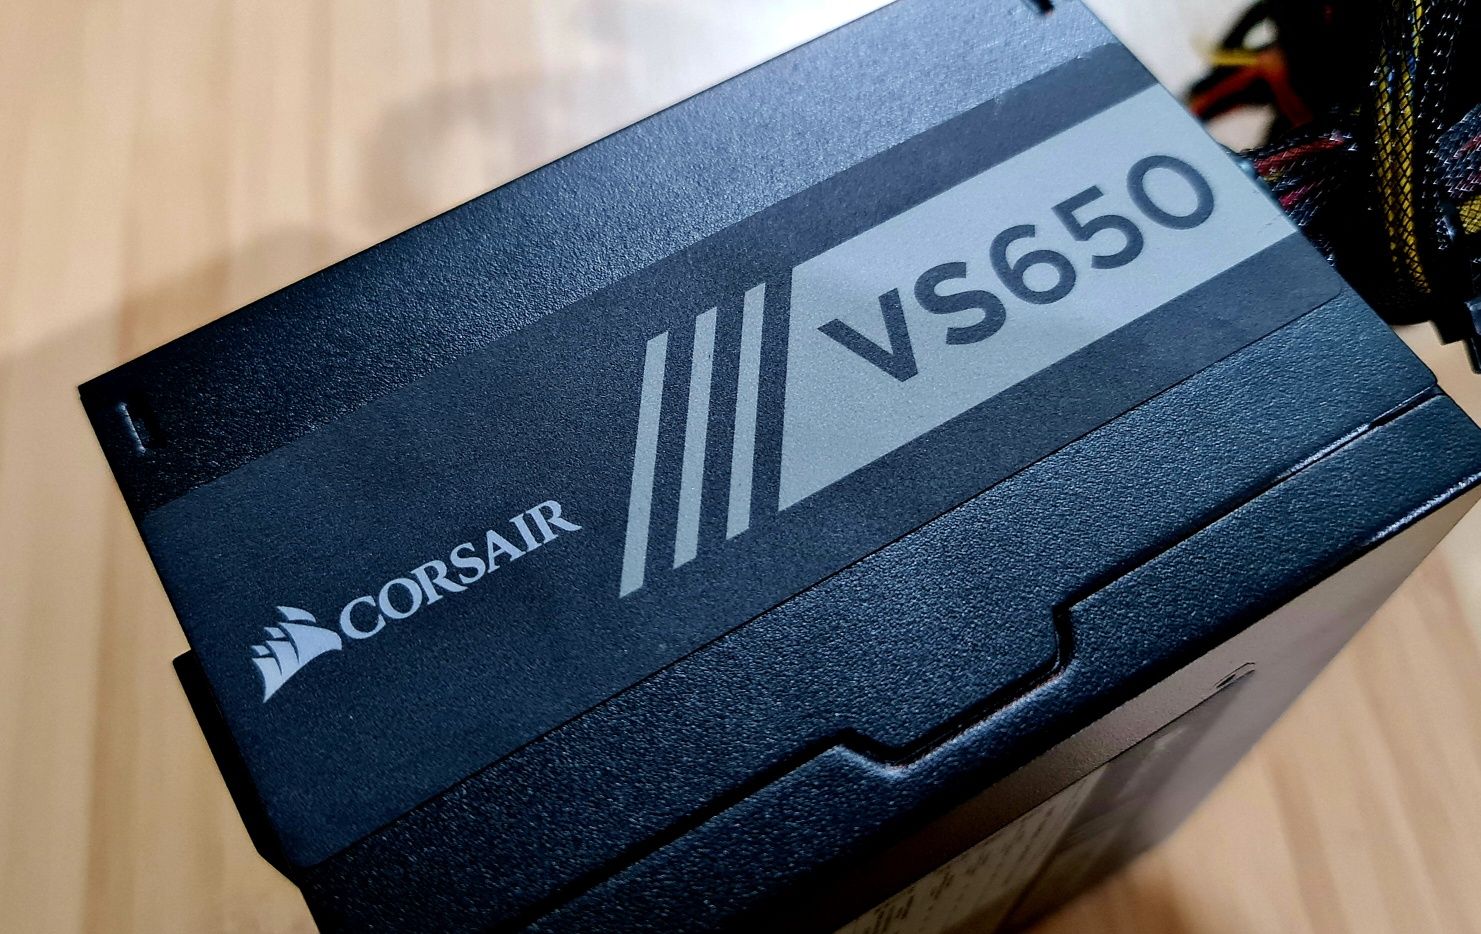 Sursa gaming Corsair putere 650W model VS650